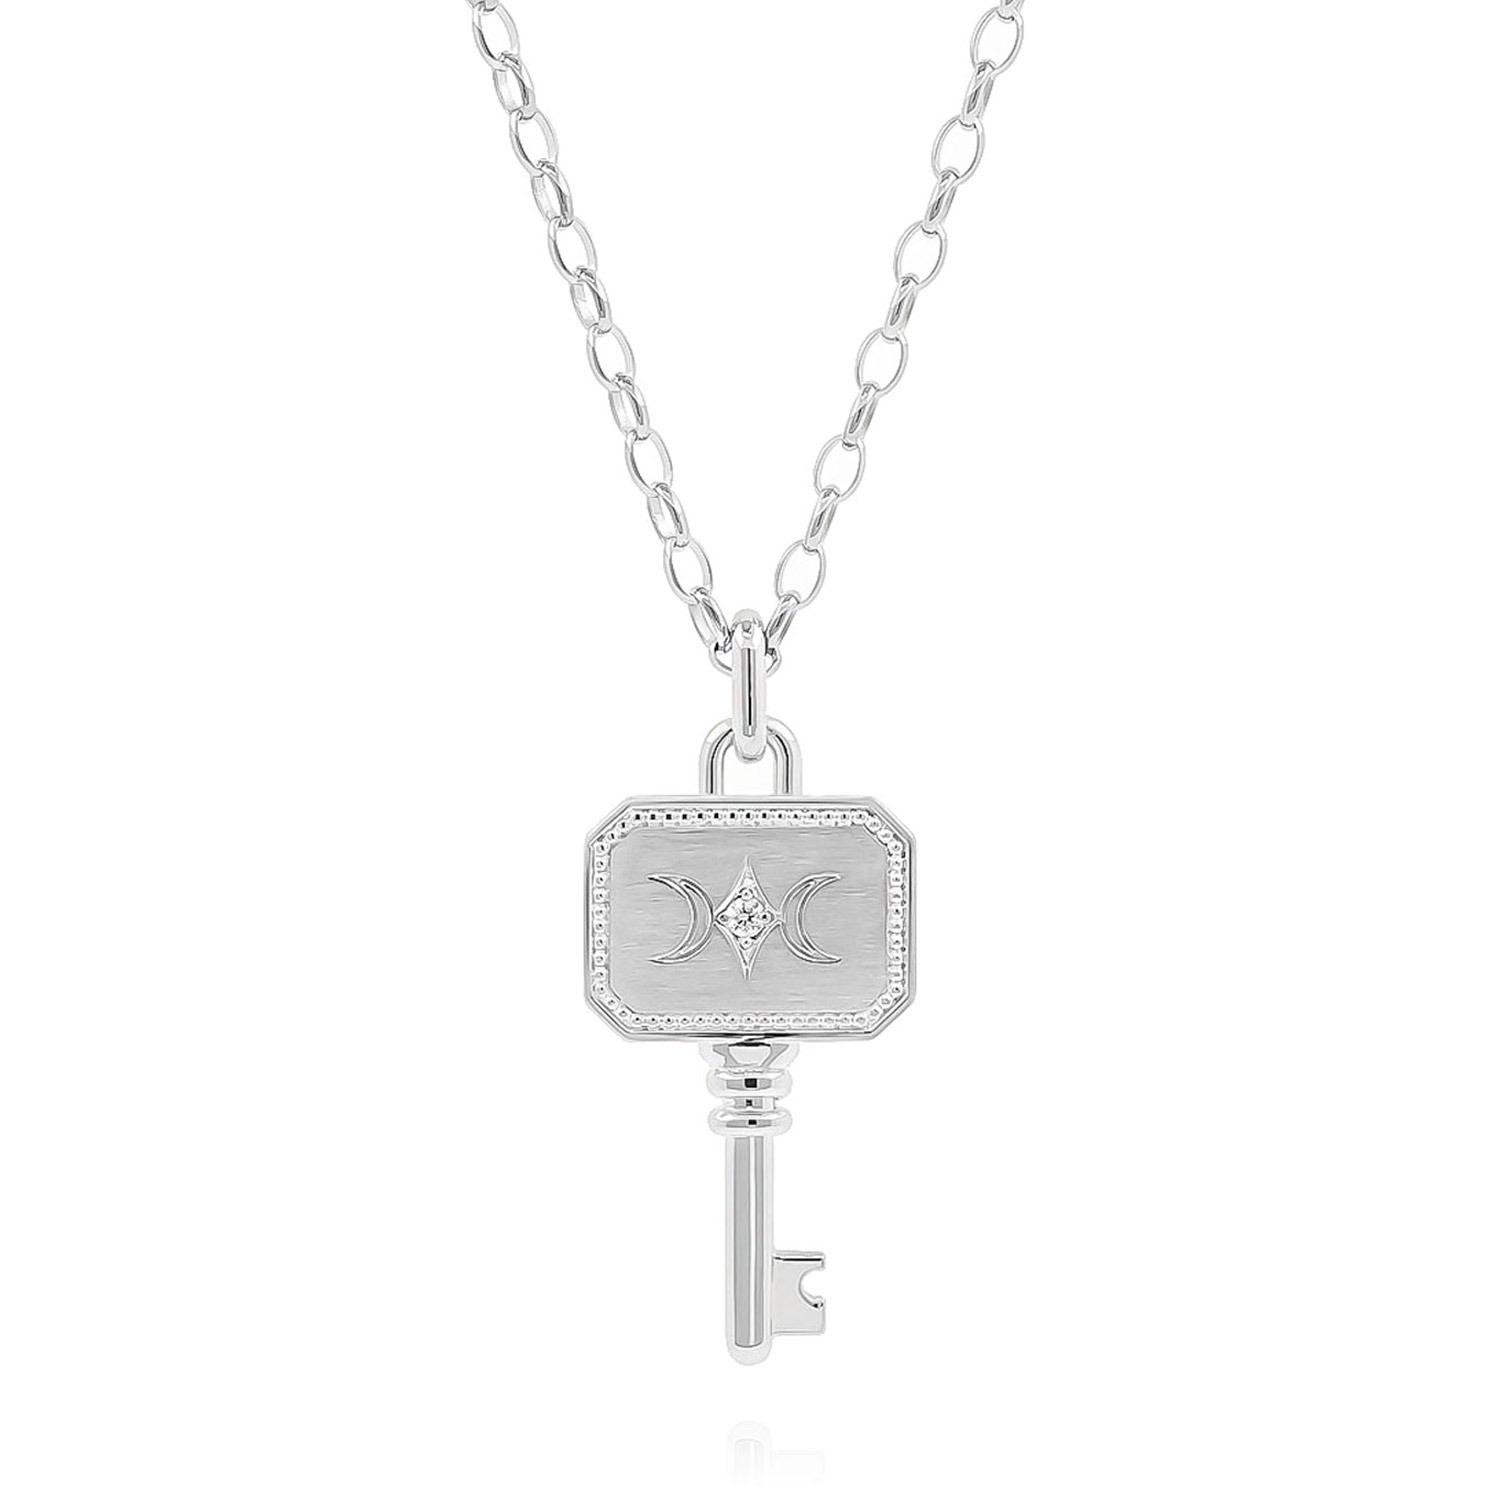 Women’s Cote Cache Key Pendant Chain Necklace - Silver Côté Caché